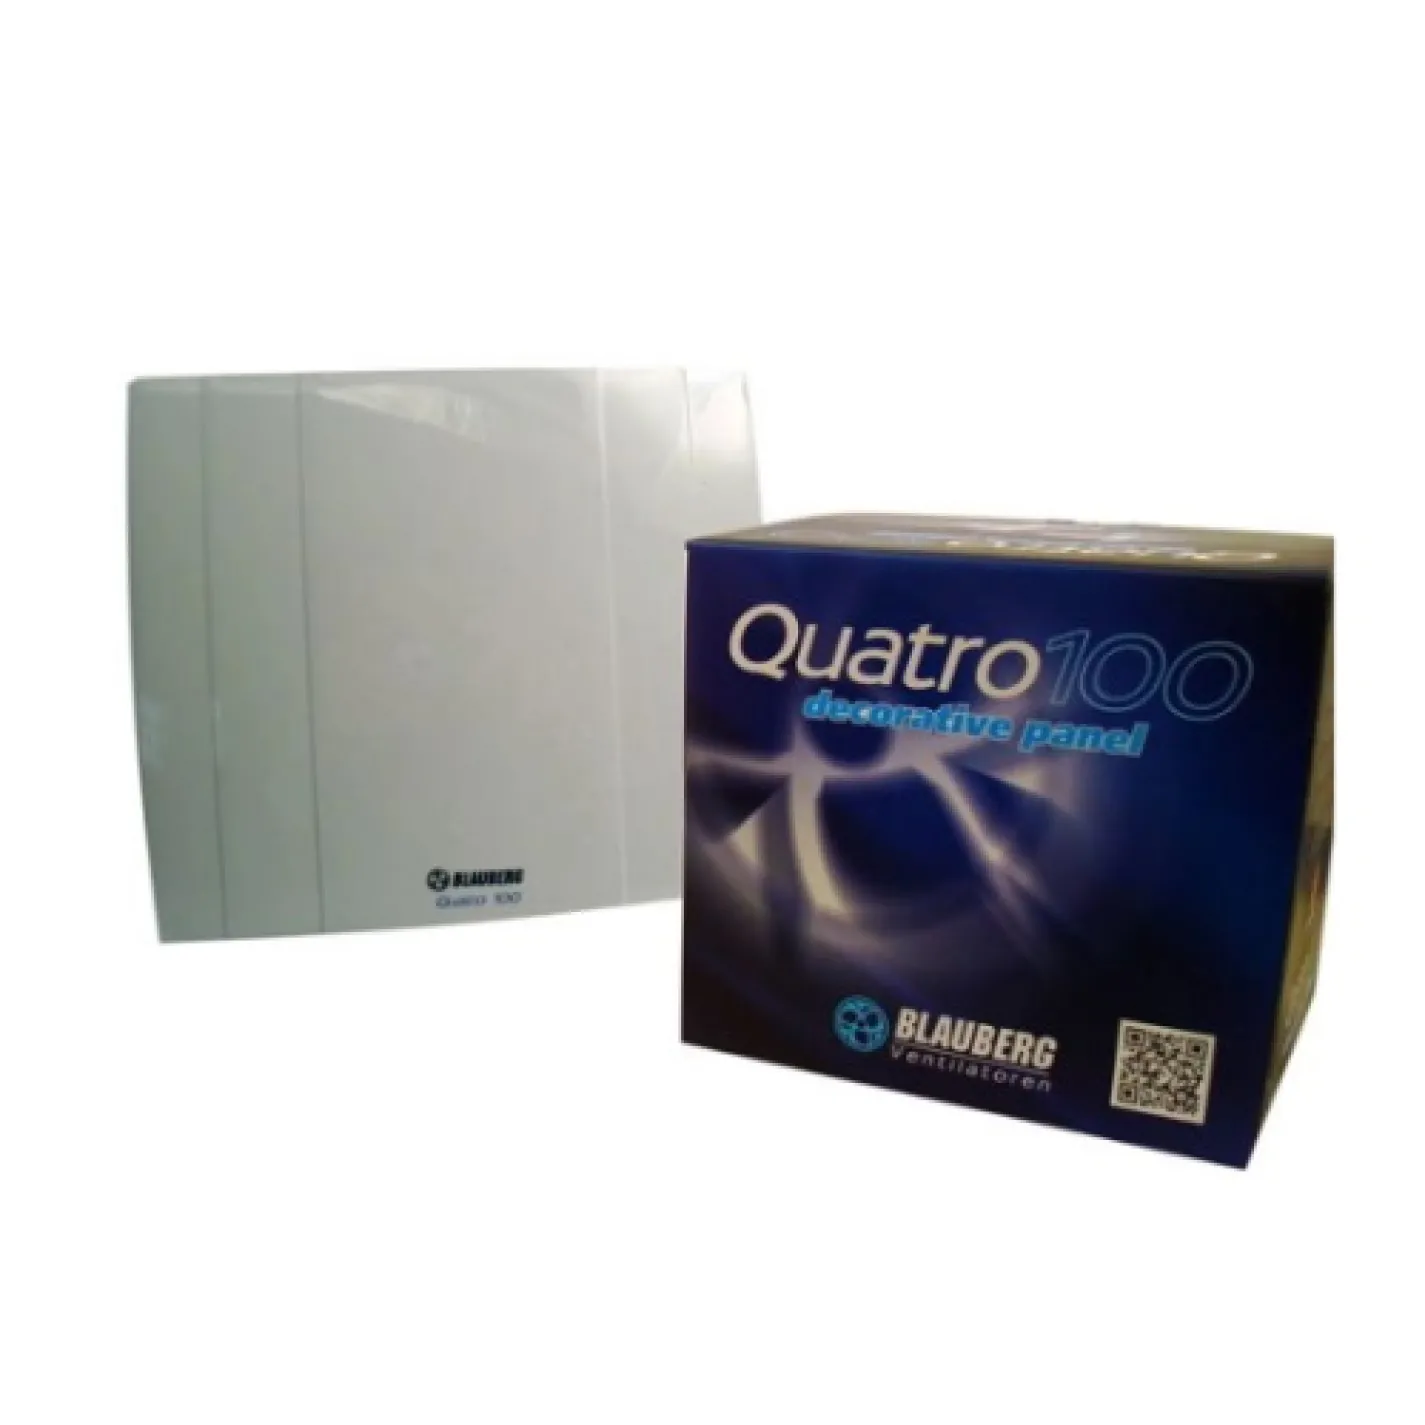 Вытяжной вентилятор Blauberg Quatro 150 - Фото 2